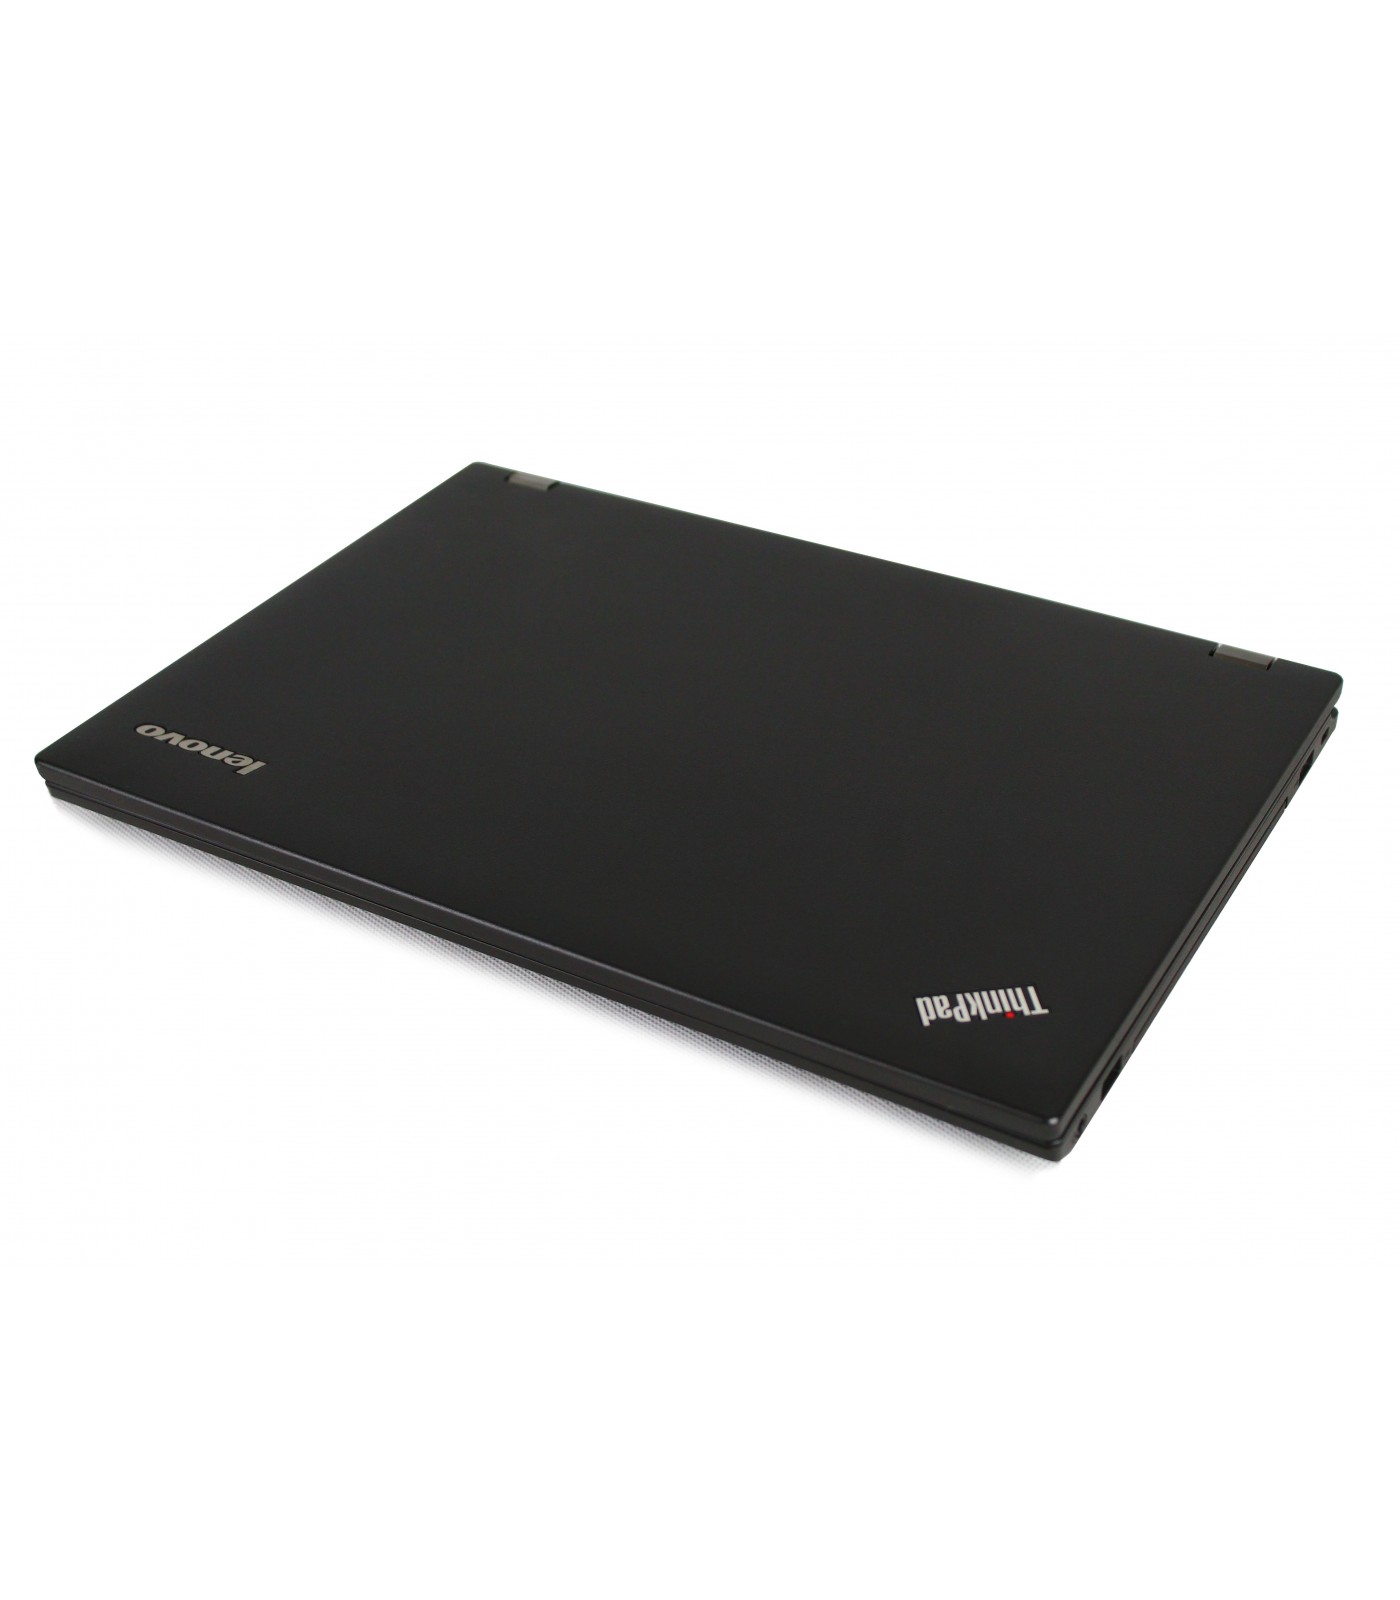 Poleasingowy laptop Lenovo ThinkPad L440 z Intel Core i5-4210M w klasie A.